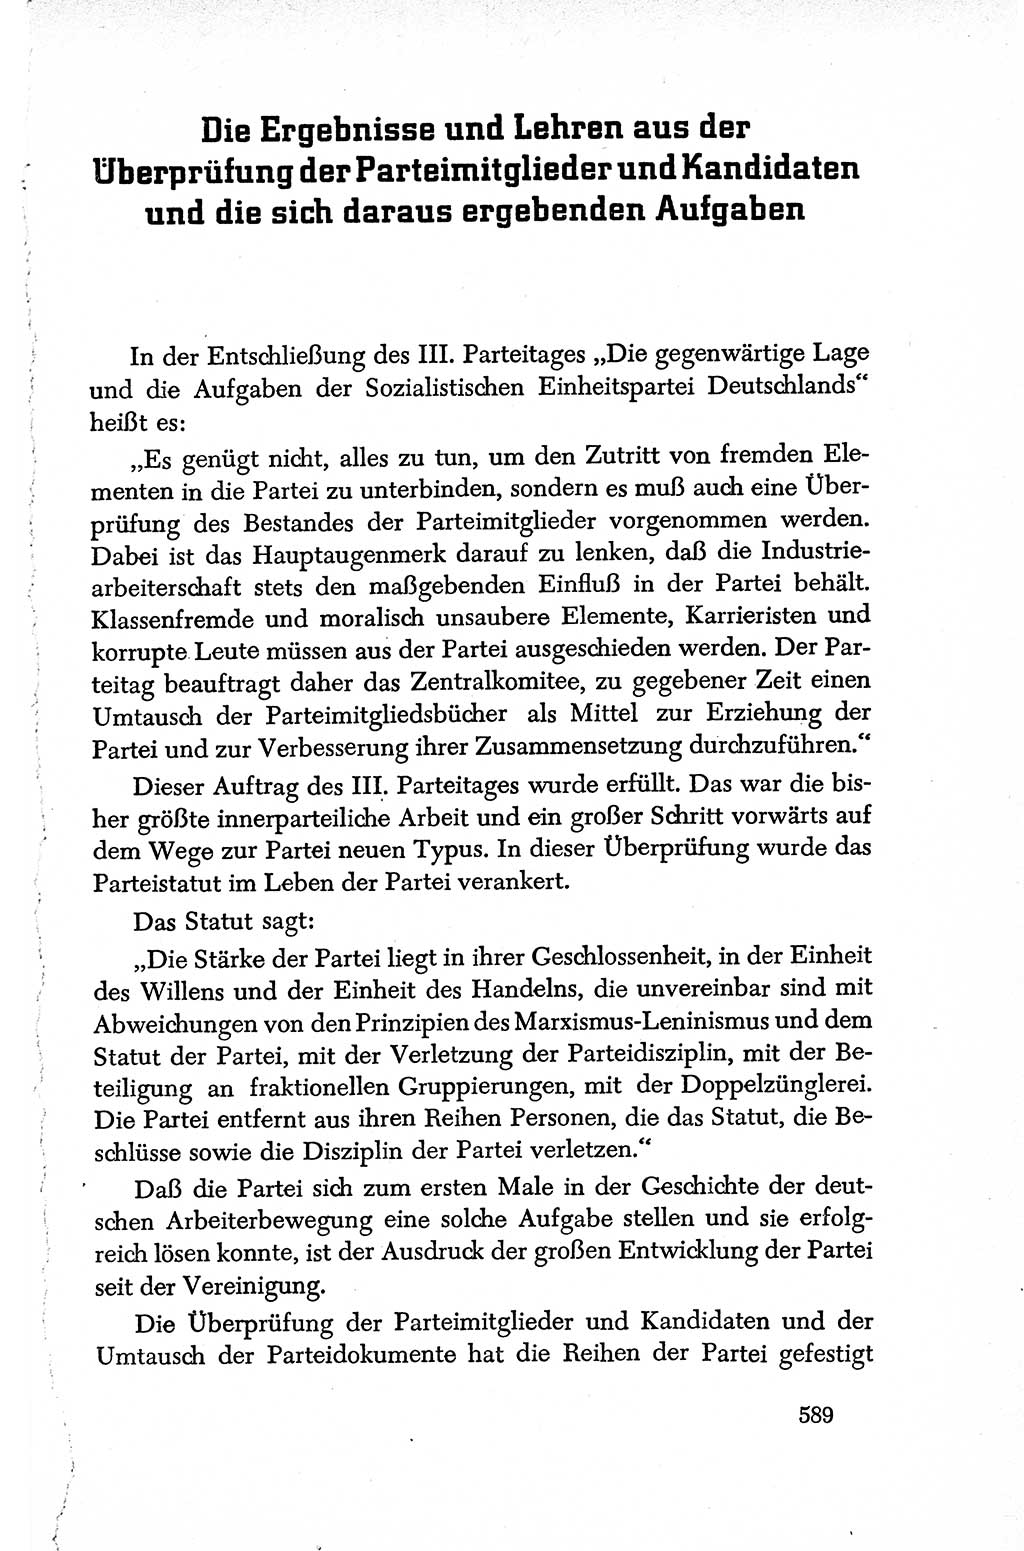 Dokumente der Sozialistischen Einheitspartei Deutschlands (SED) [Deutsche Demokratische Republik (DDR)] 1950-1952, Seite 589 (Dok. SED DDR 1950-1952, S. 589)